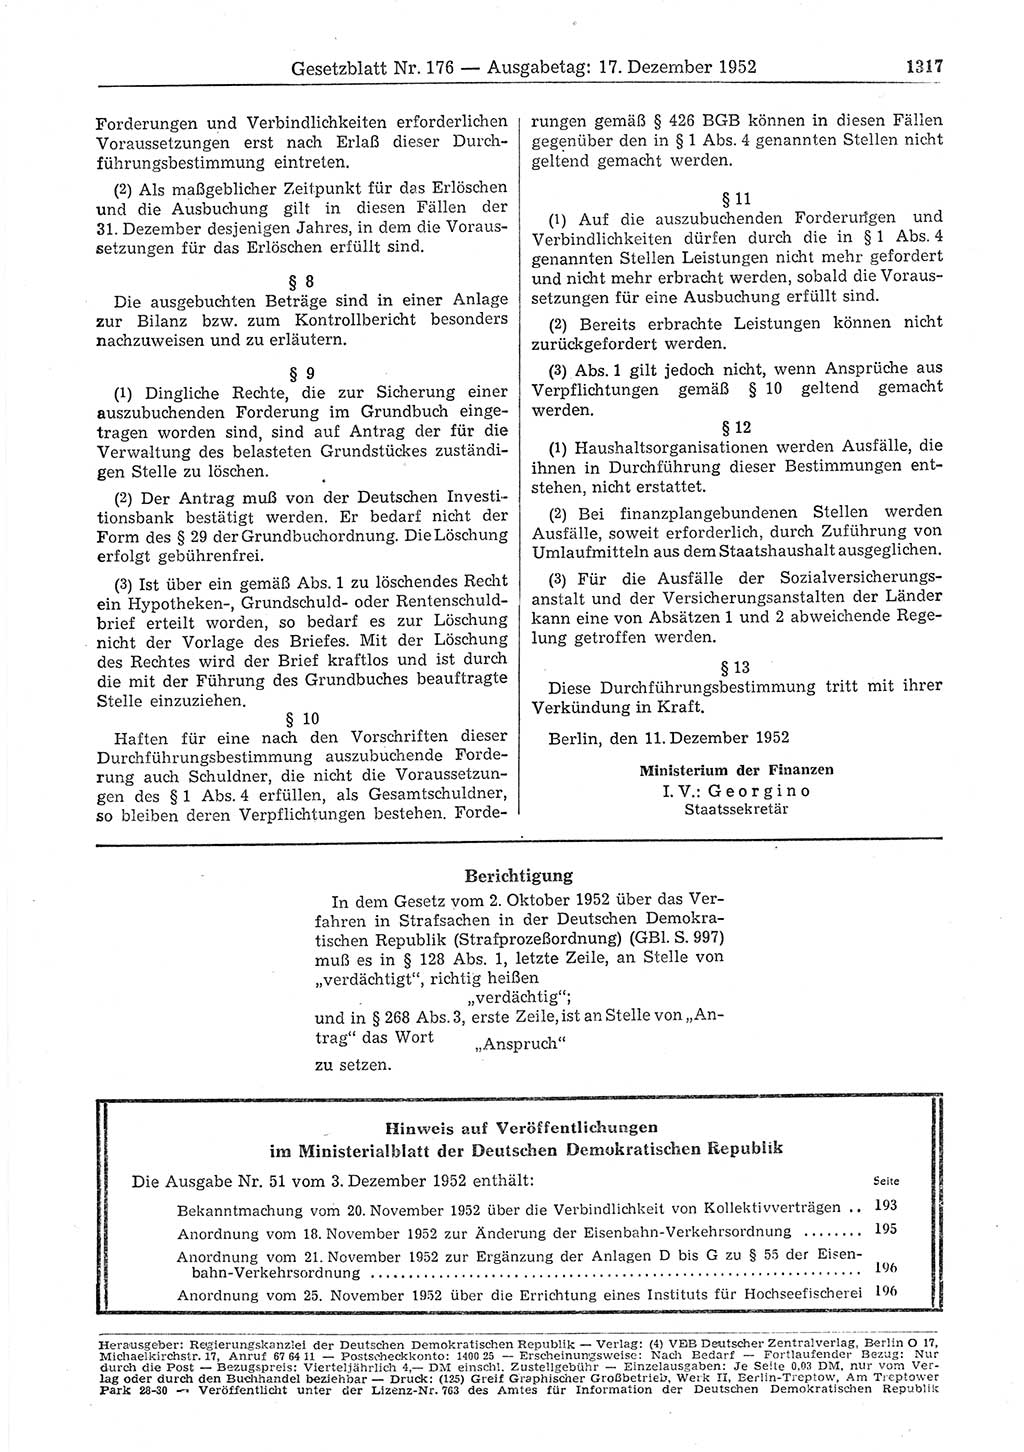 Gesetzblatt (GBl.) der Deutschen Demokratischen Republik (DDR) 1952, Seite 1317 (GBl. DDR 1952, S. 1317)